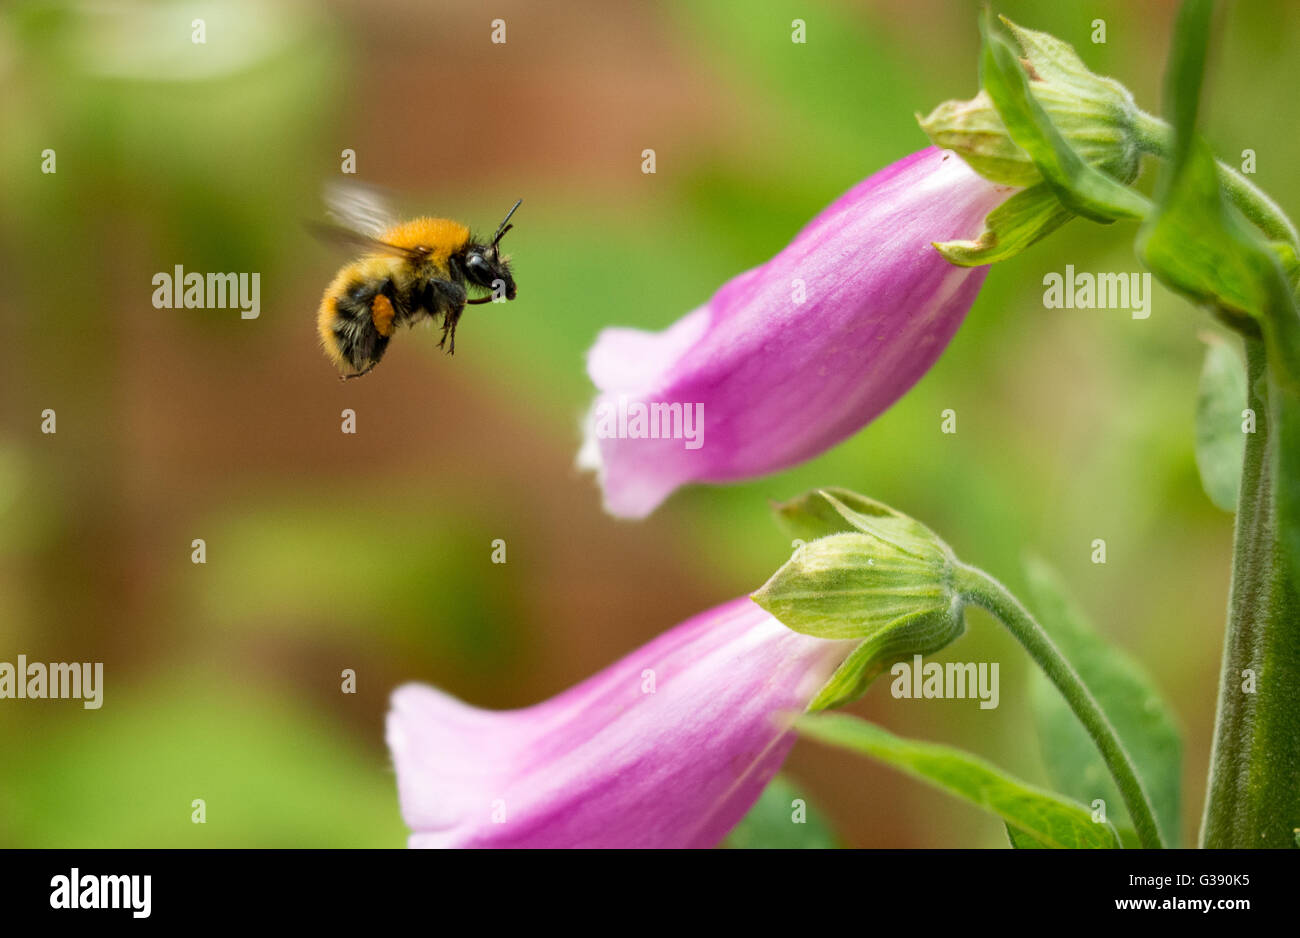 Biene in einer und Alamy -Fotos – Auflösung in fingerhutblüte hoher -Bildmaterial